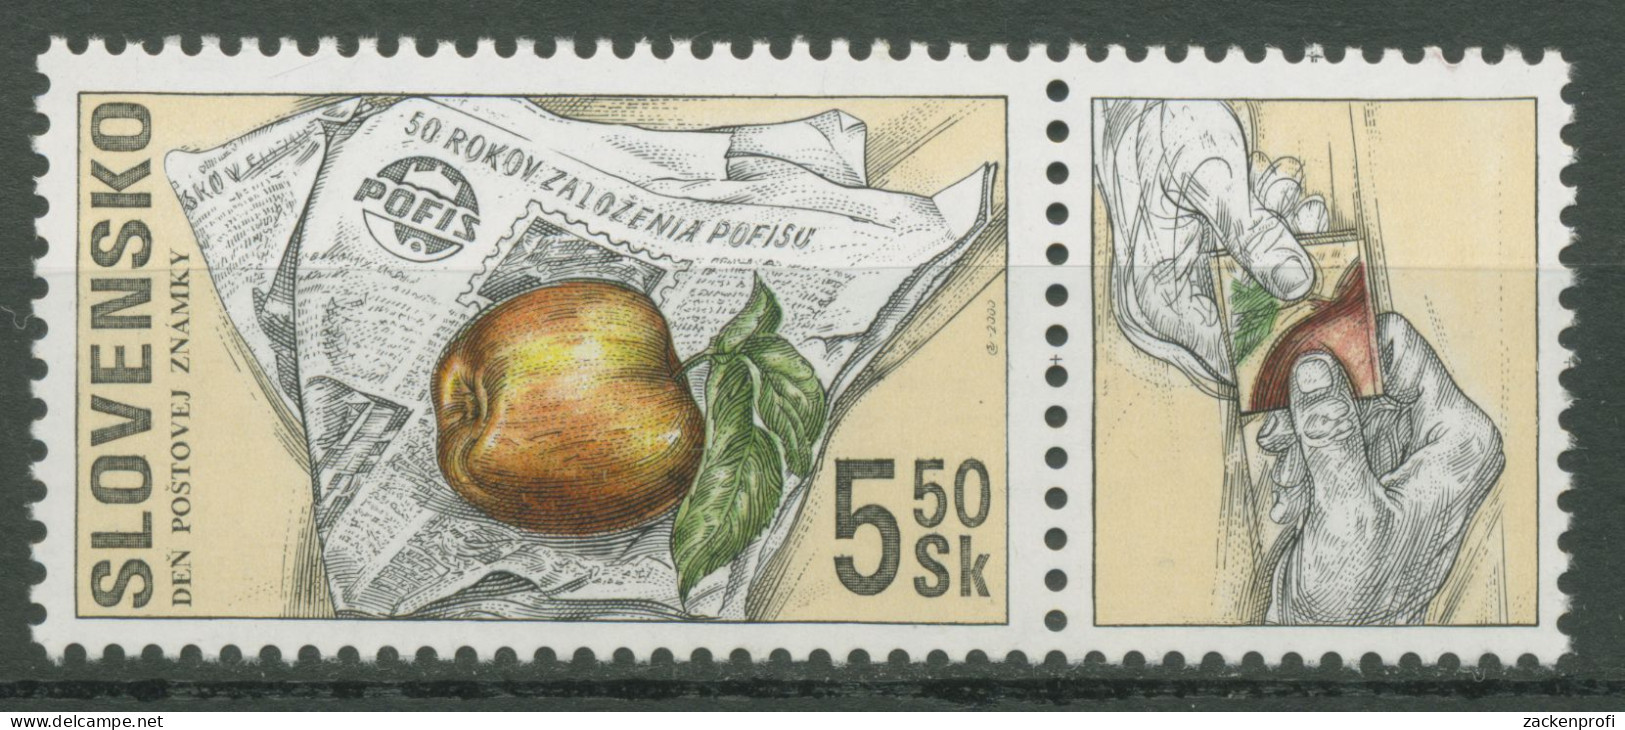 Slowakei 2000 Tag Der Briefmarke POFIS Zeitschrift 383 Zf Postfrisch - Ungebraucht